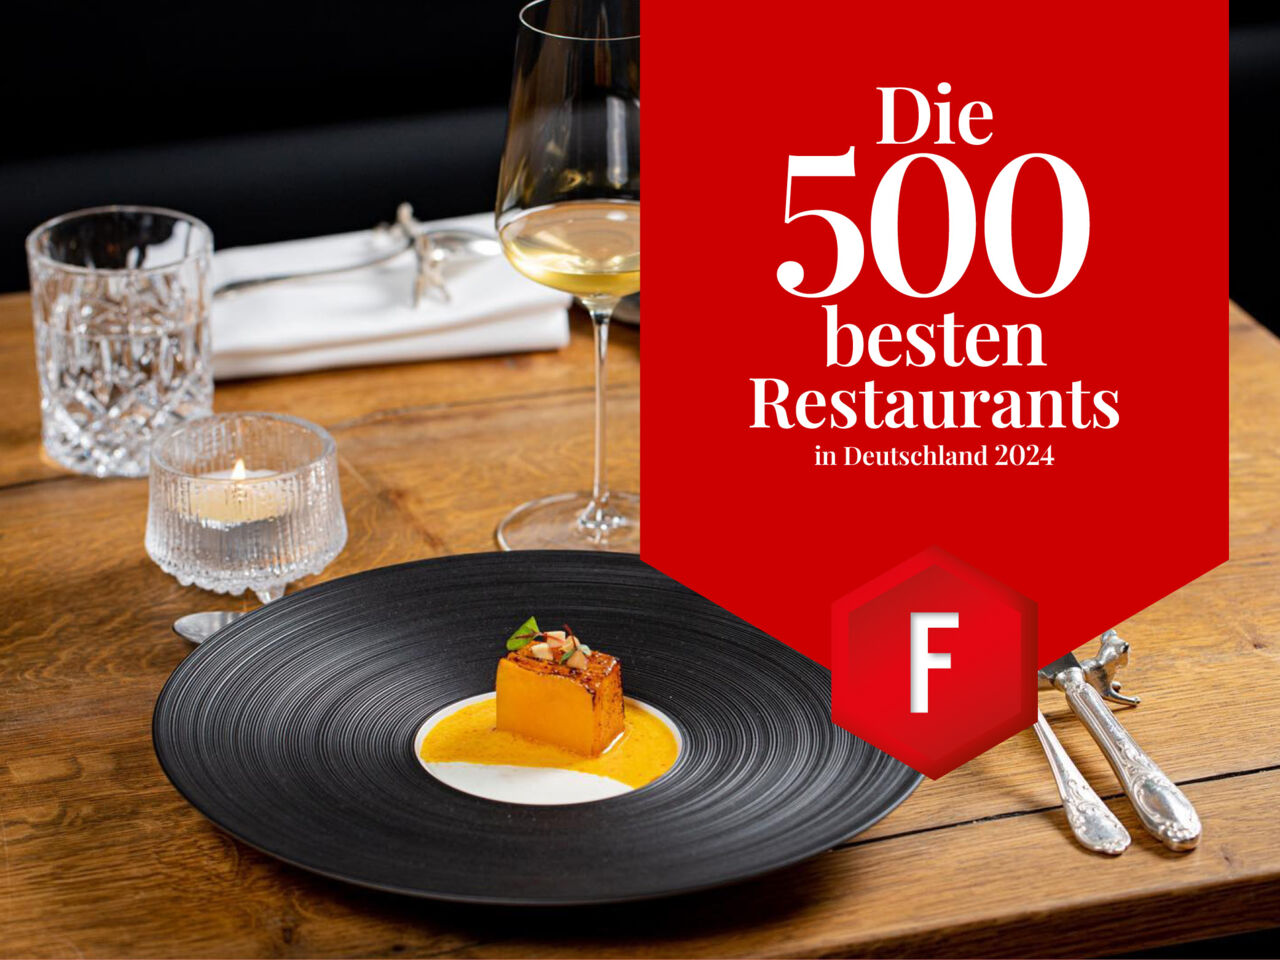 Die 500 besten Restaurants in Deutschland 2024